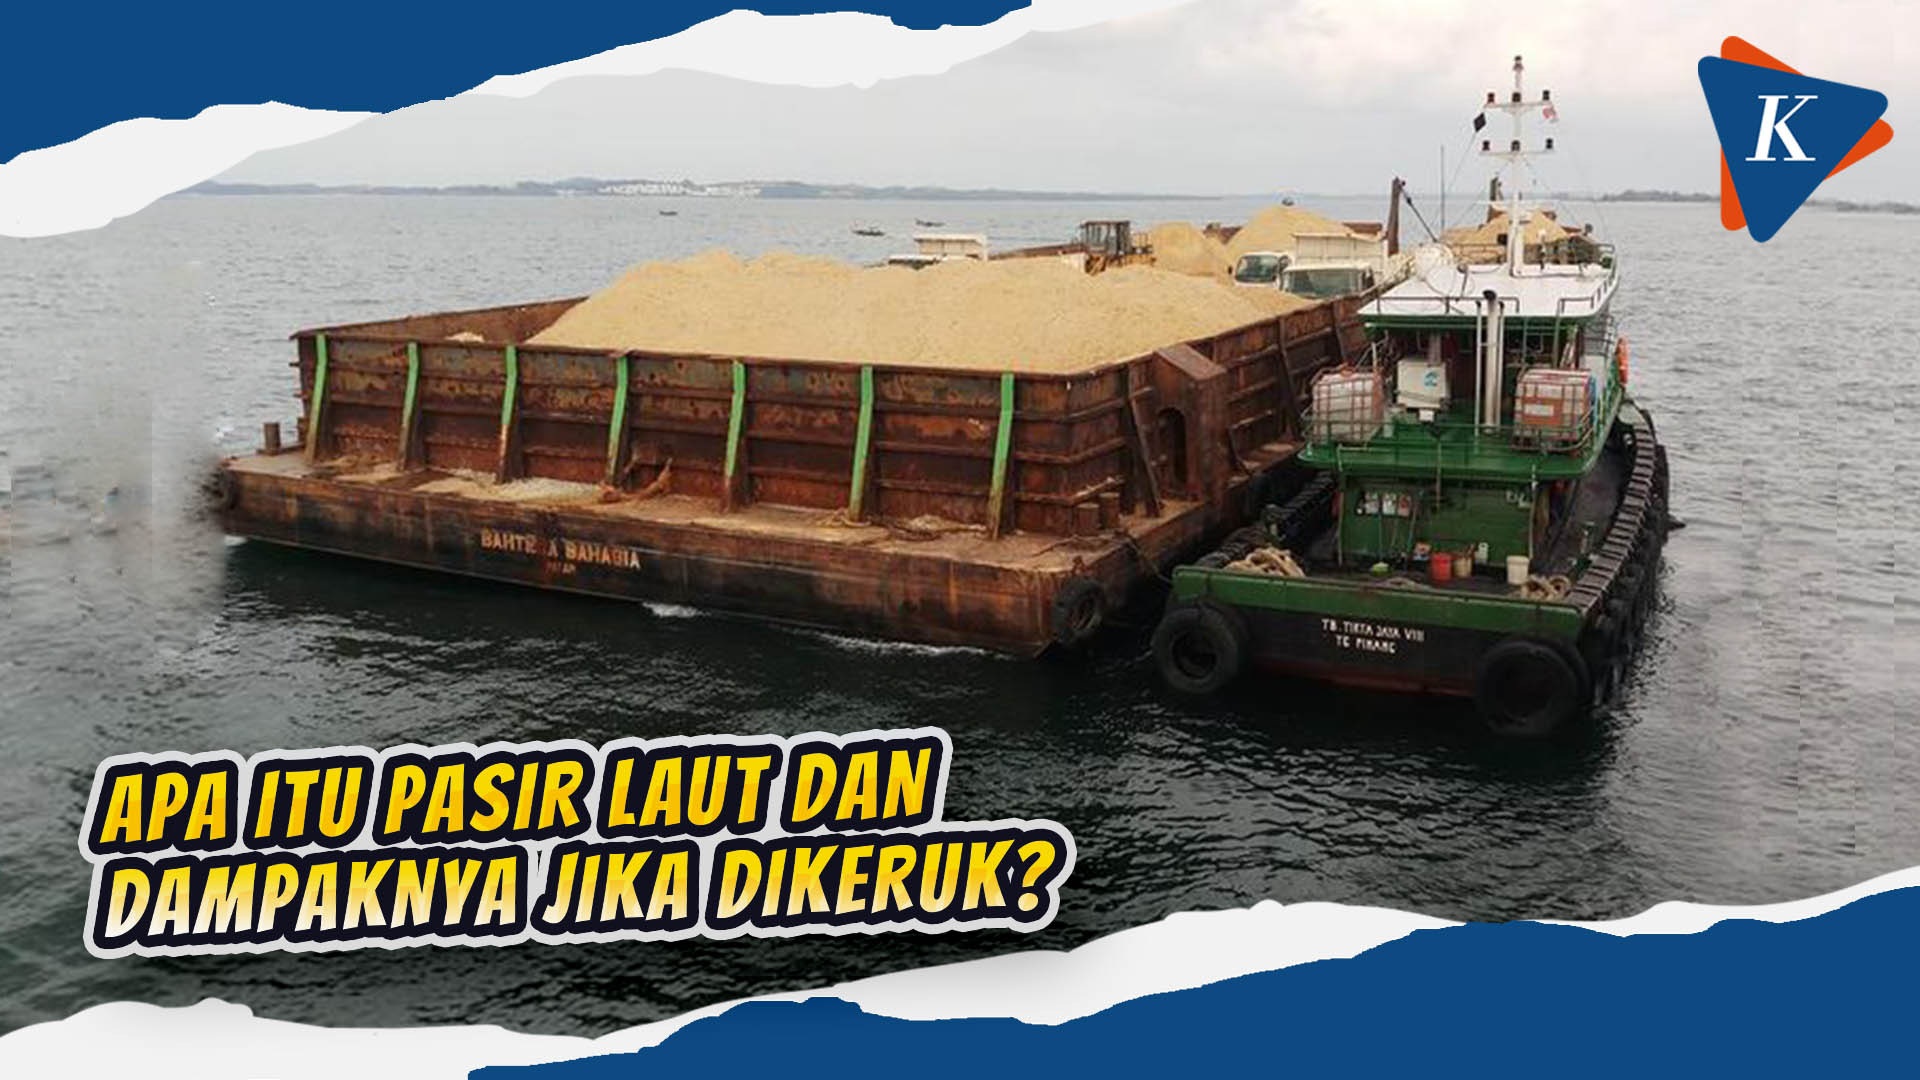 Jokowi Izinkan Ekspor Pasir Laut Setelah 20 Tahun Dilarang, Bagaimana Dampaknya?